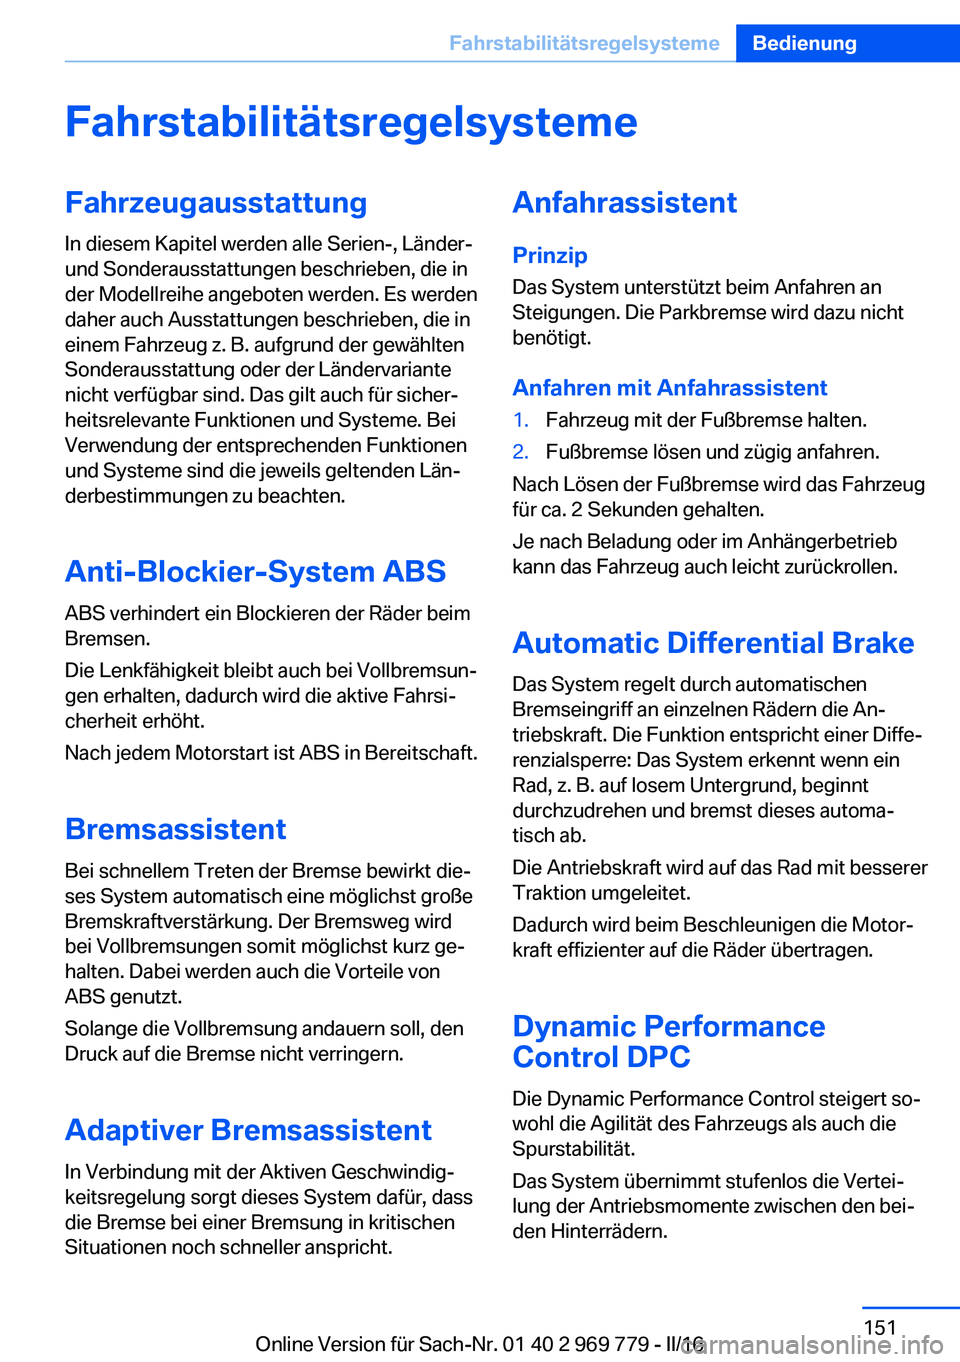 BMW X5 2016  Betriebsanleitungen (in German) FahrstabilitätsregelsystemeFahrzeugausstattung
In diesem Kapitel werden alle Serien-, Länder-
und Sonderausstattungen beschrieben, die in
der Modellreihe angeboten werden. Es werden
daher auch Ausst